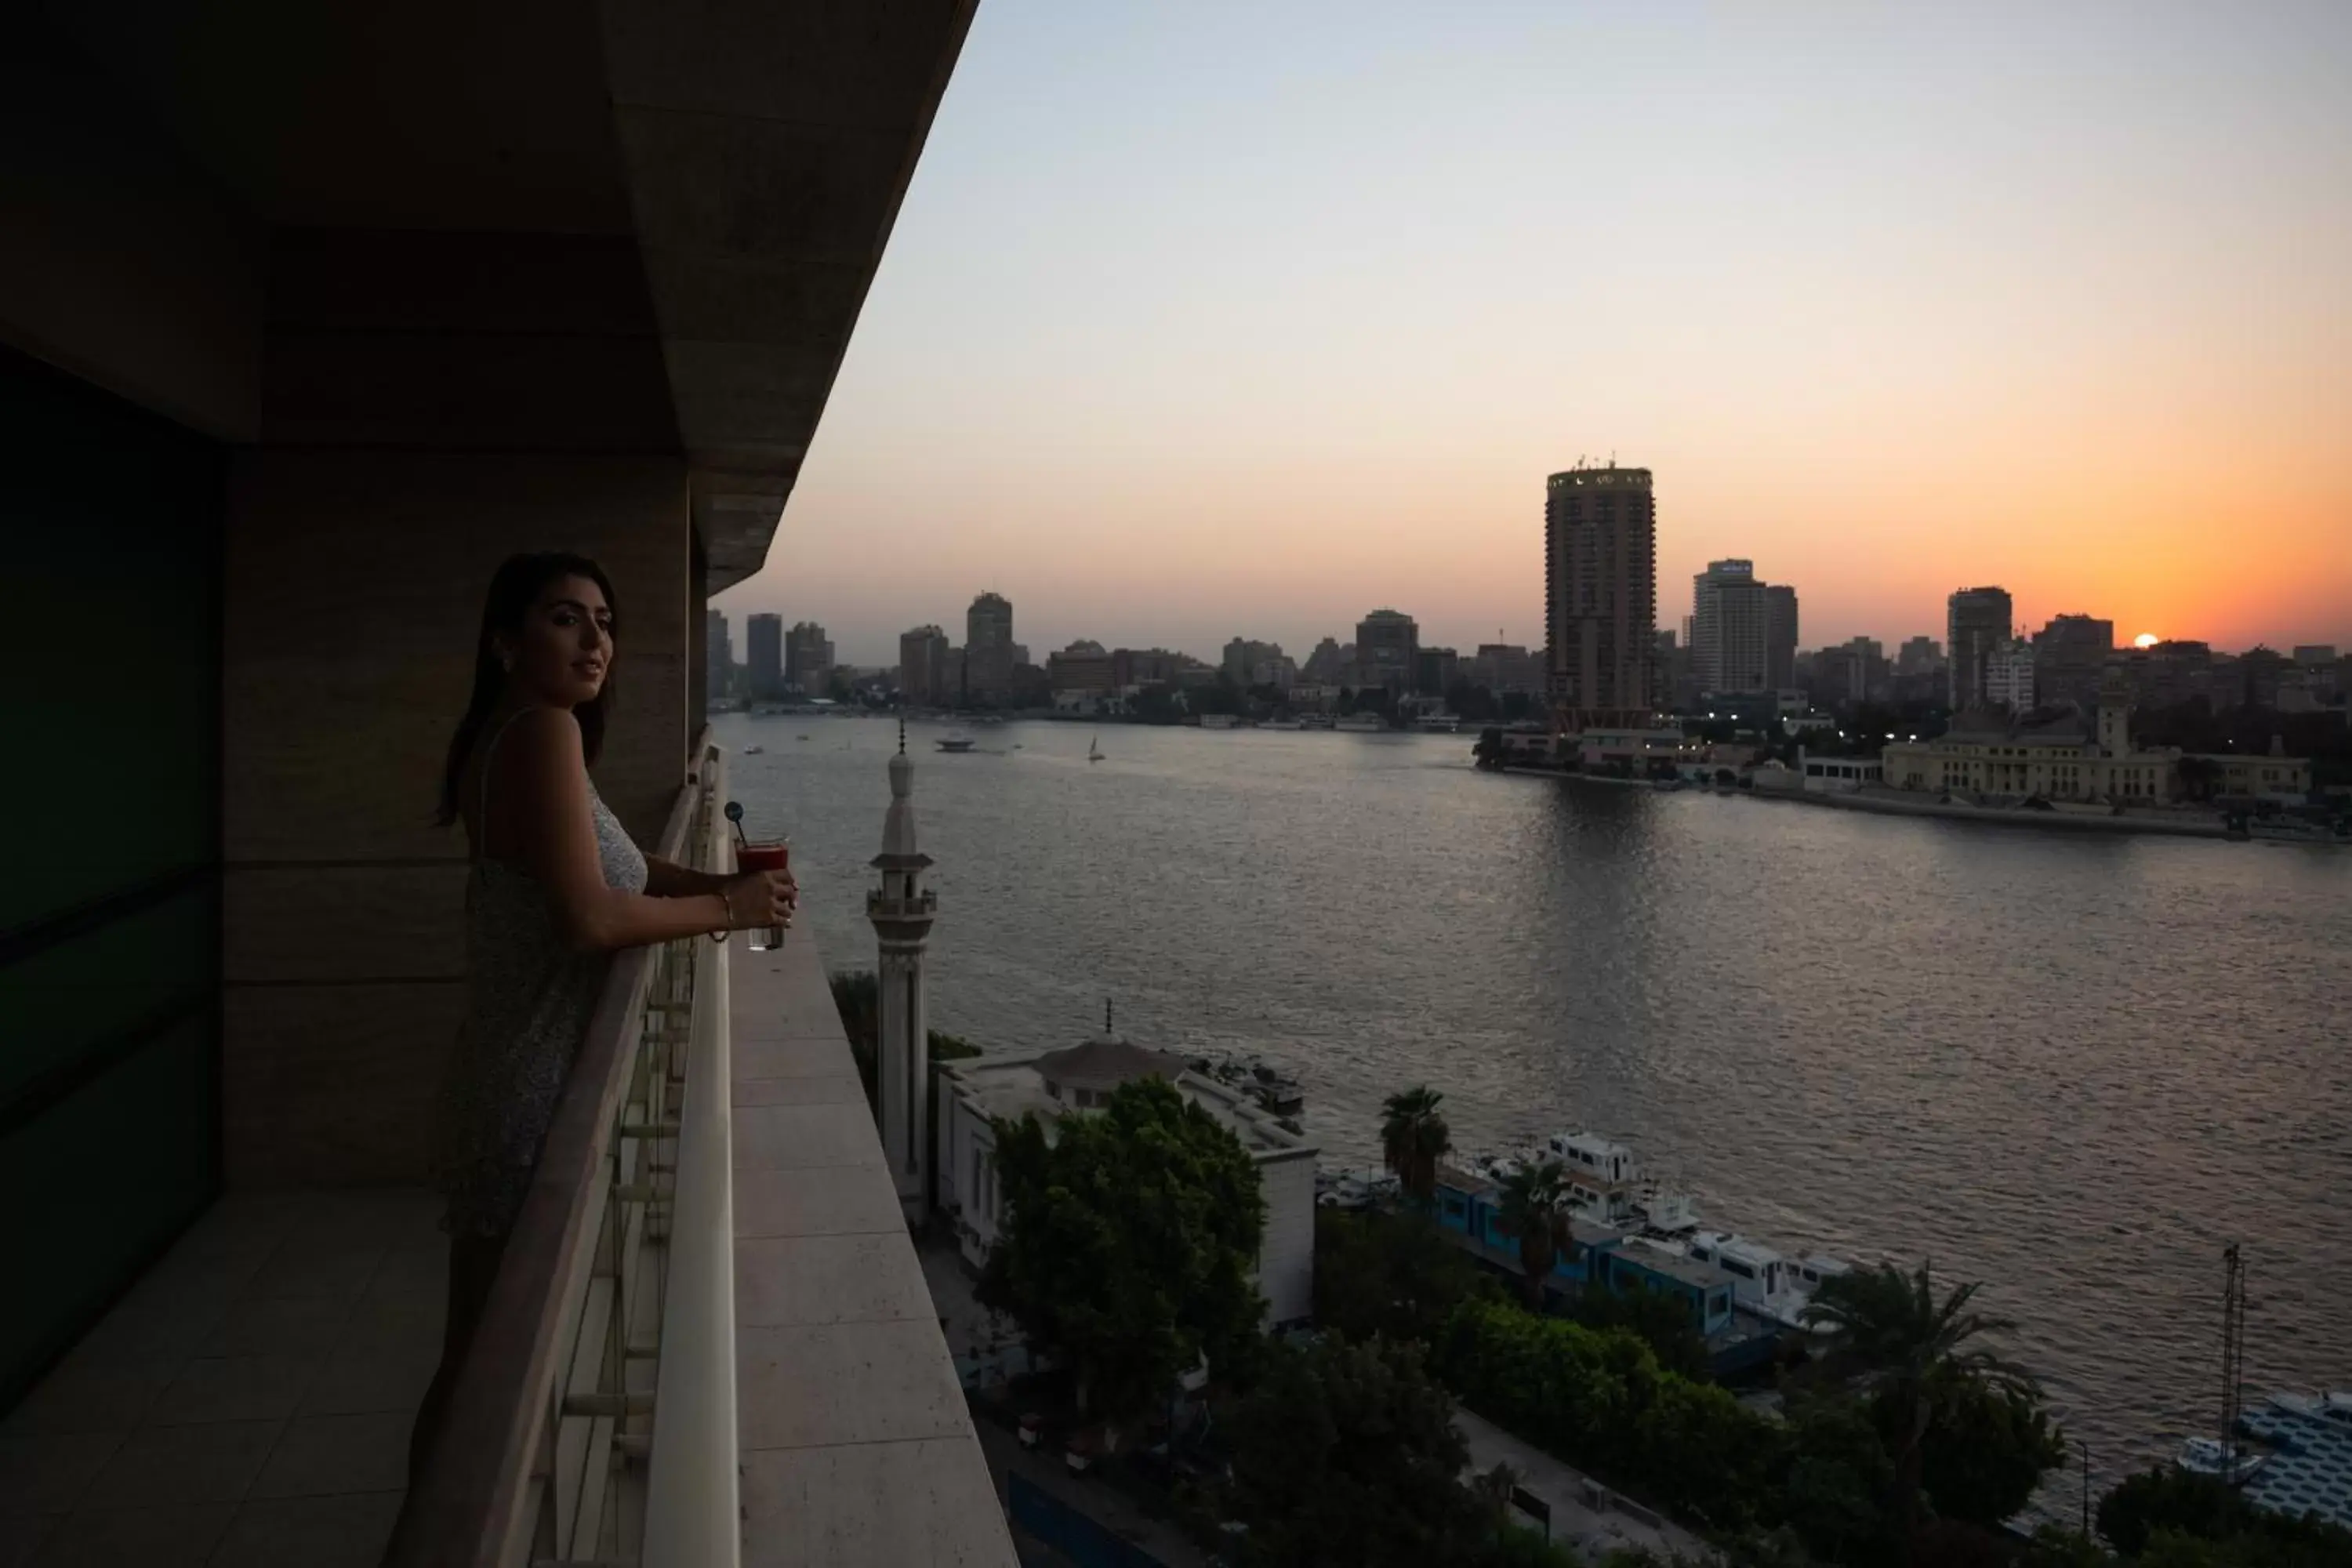 Sunset in Kempinski Nile Hotel, Cairo